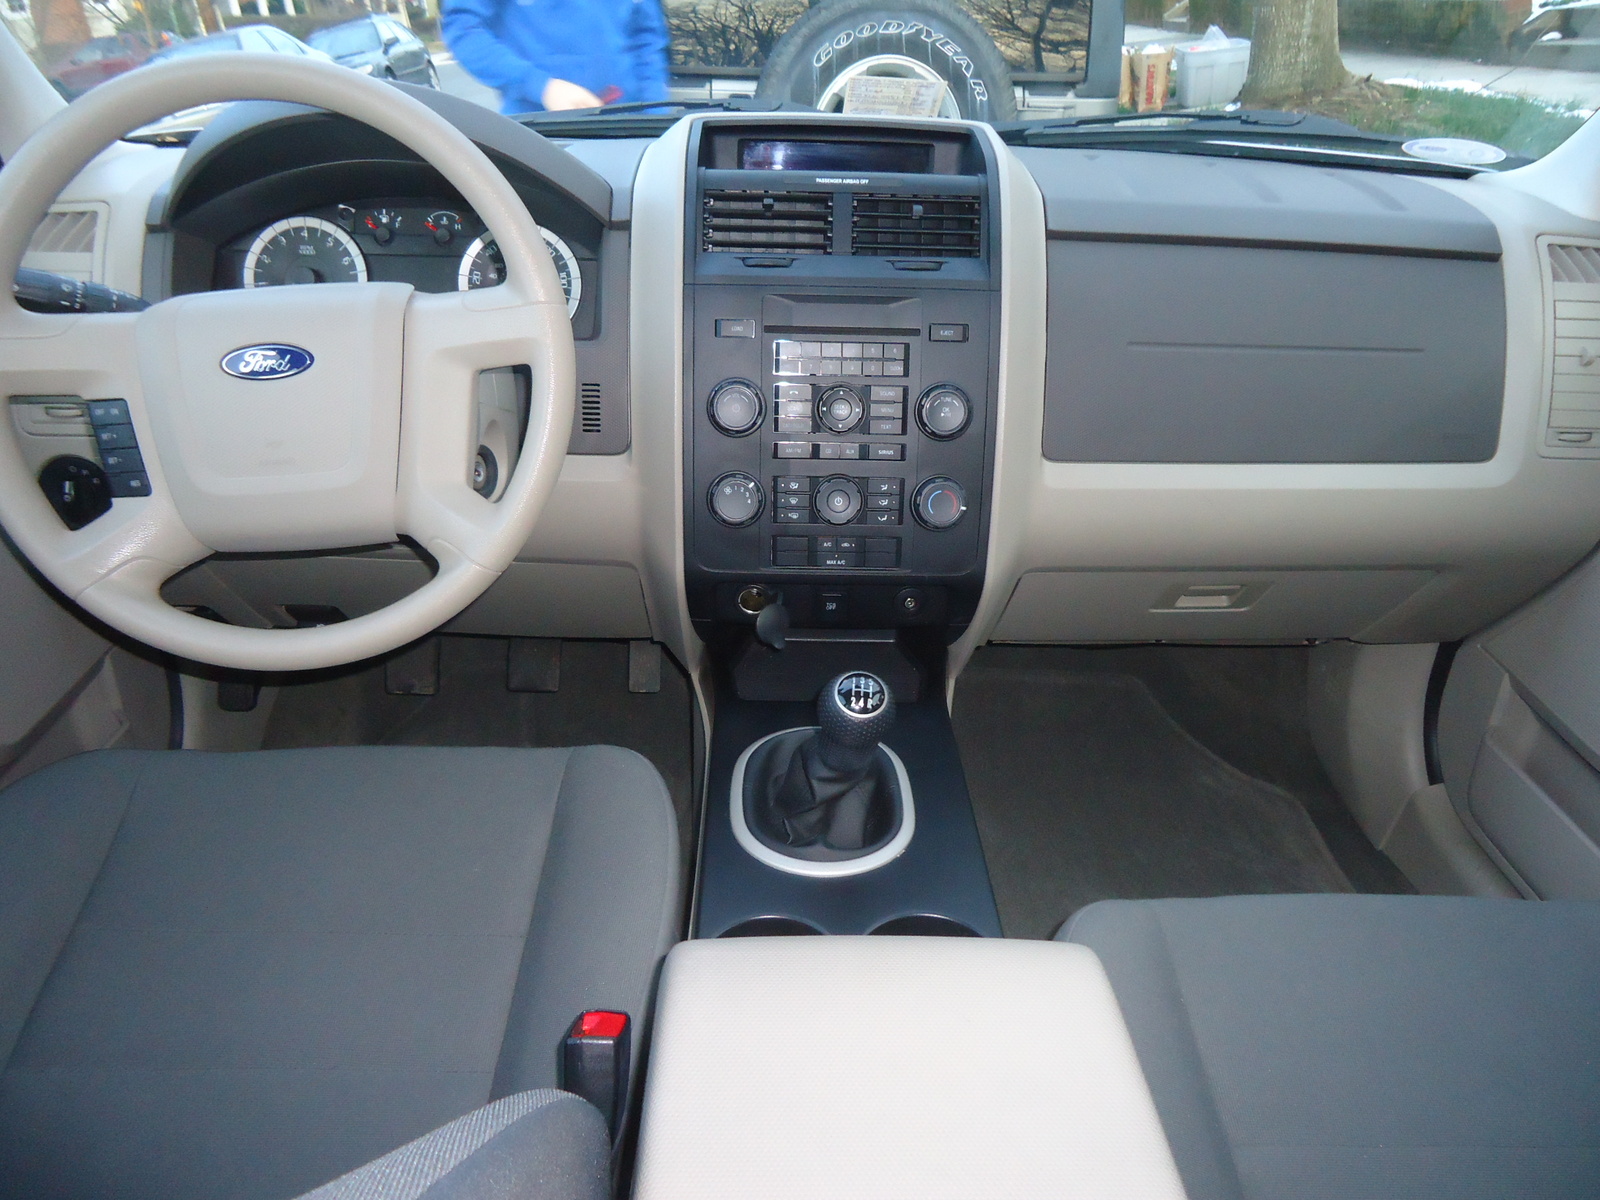 2011 Ford escape interior dimensions #9